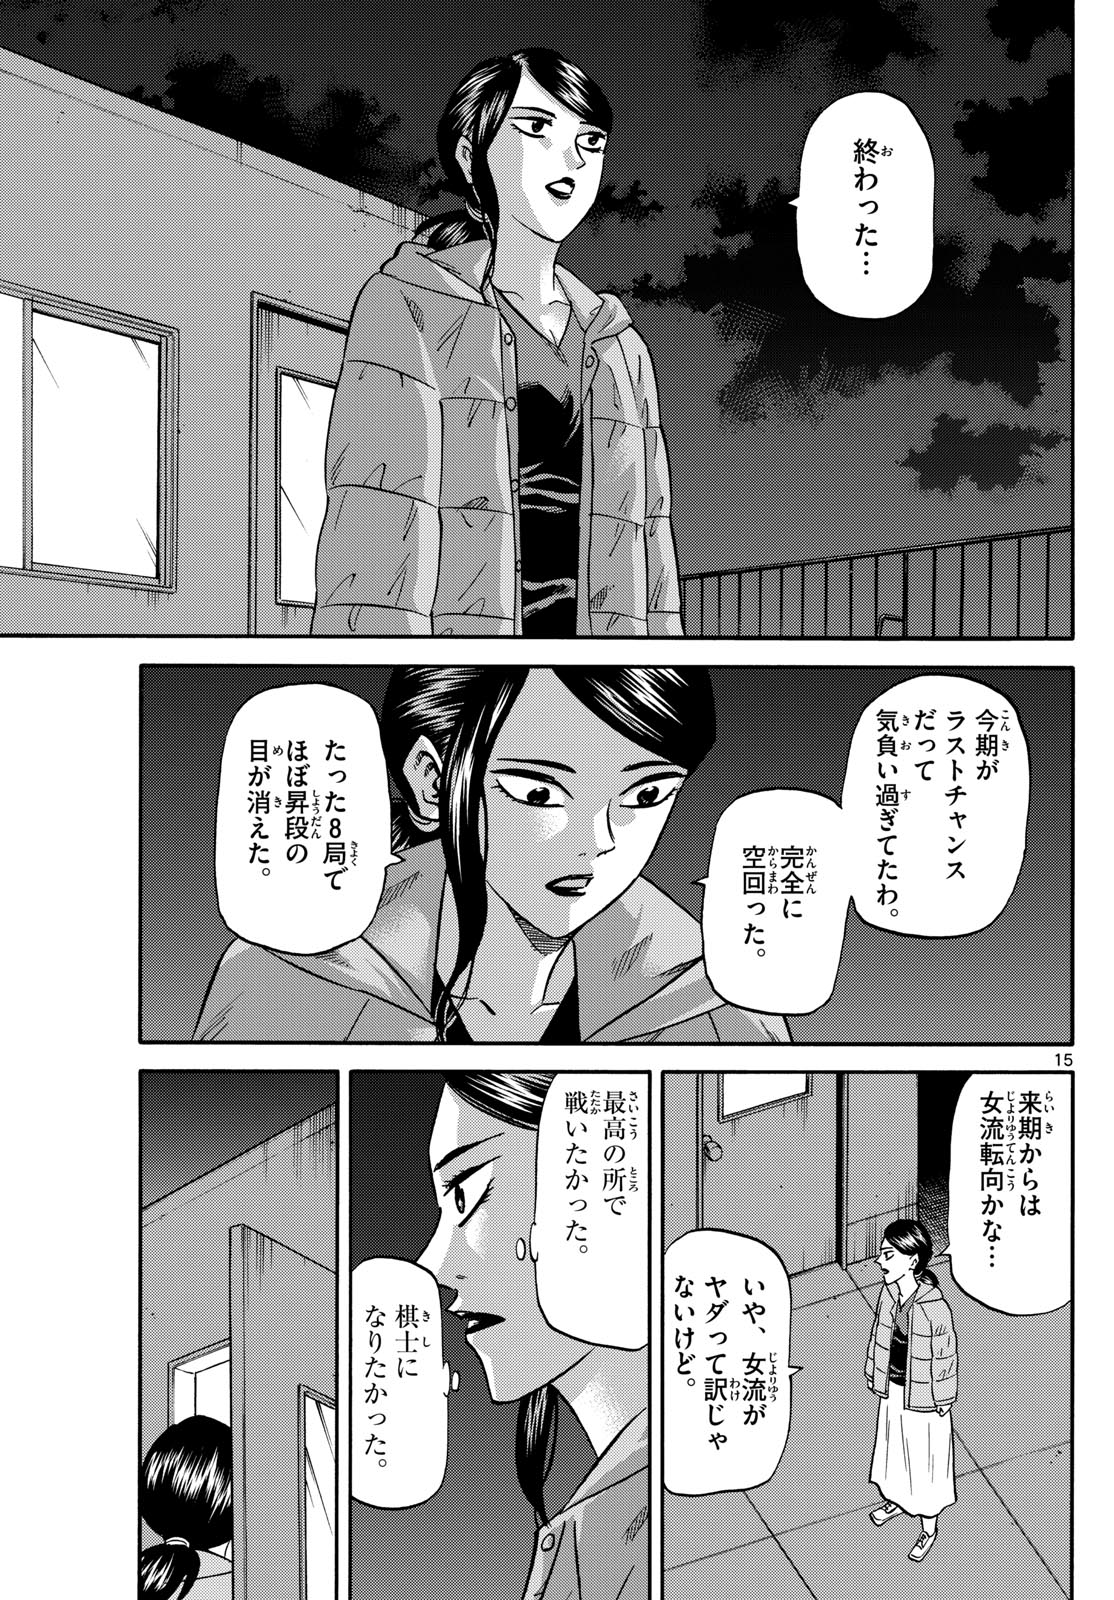 Tatsu to Ichigo - Chapter 172 - Page 15